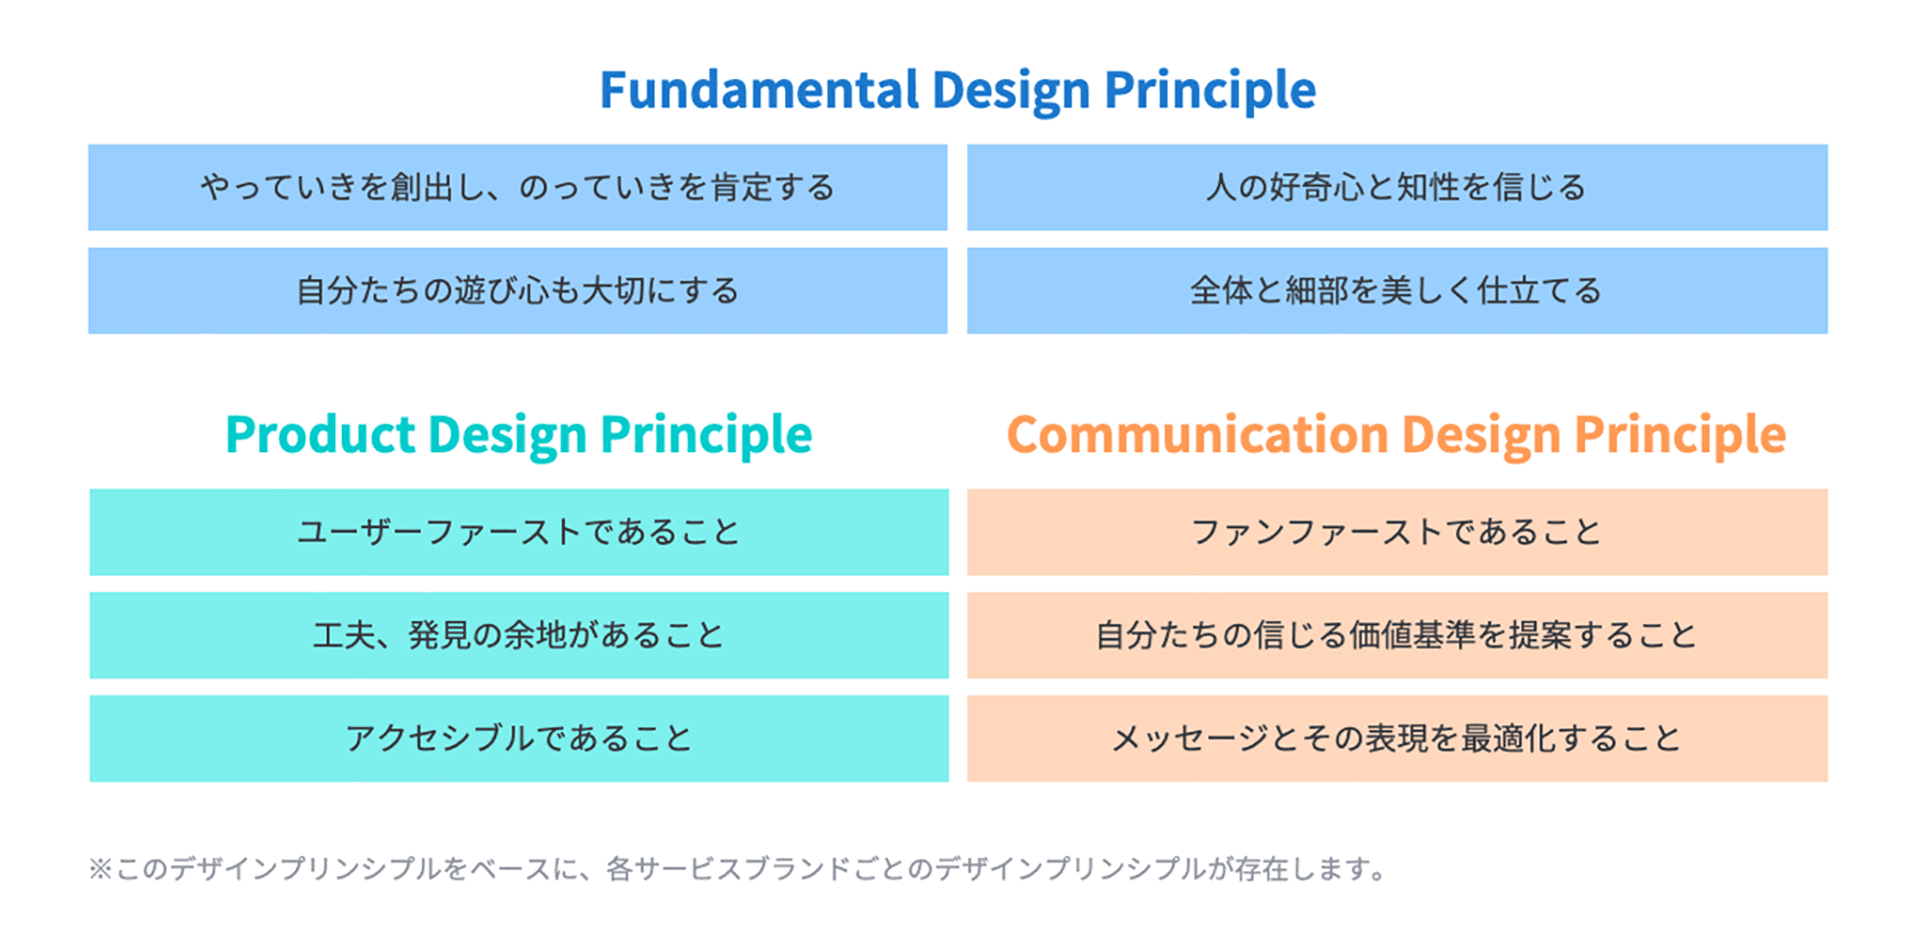 ペパボのデザインプリンシプルは「ファンダメンタルデザインプリンシプル」「プロダクトデザインプリンシプル」「コミュニケーションデザインデザインプリンシプル」の3つの構成になっているのを表す図。ペパボが提供するサービス領域であるプロダクトデザインとコミュニケーションデザインの各デザインプリンシプルに対し、ペパボ全体を網羅するファンダメンタルデザインプリンシプルが存在する。このペパボのデザインプリンシプルをベースに、各サービスブランドごとのデザインプリンシプルが存在する。